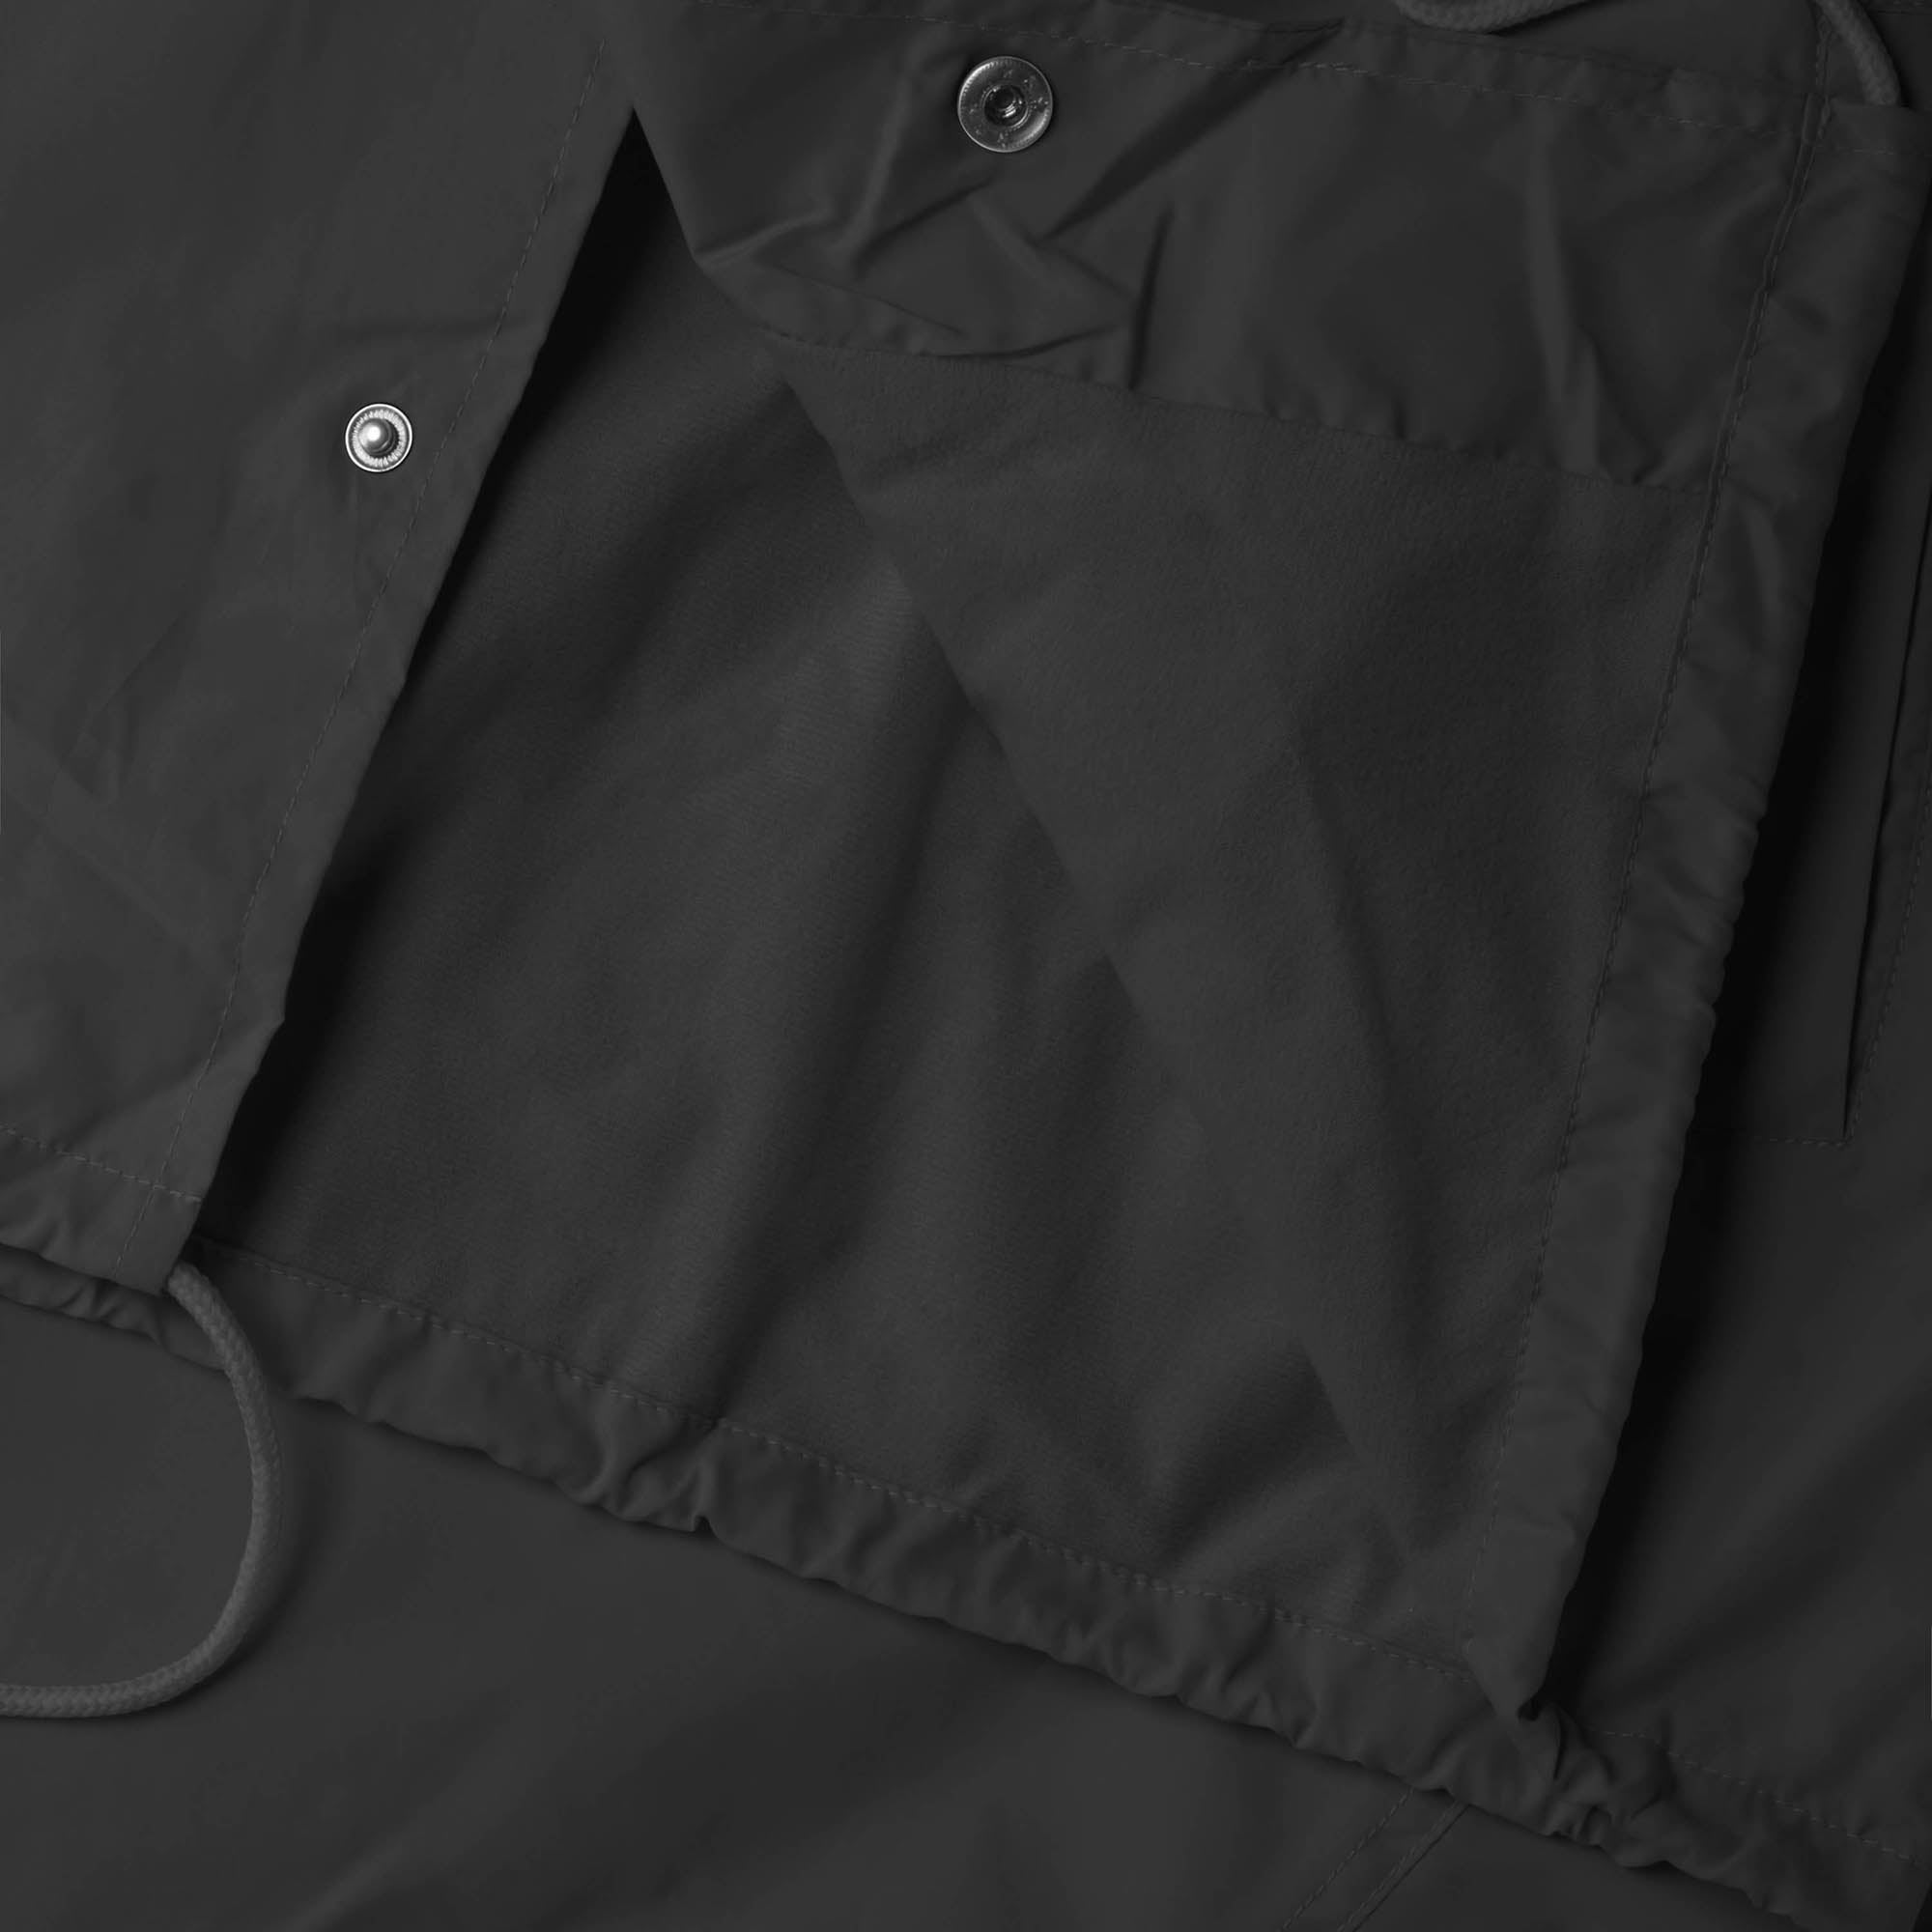 waterproof jacket_waterproofs_mens waterproof jacket_best rain jacket_lightweight waterproof jacket_water resistant jacket_Black